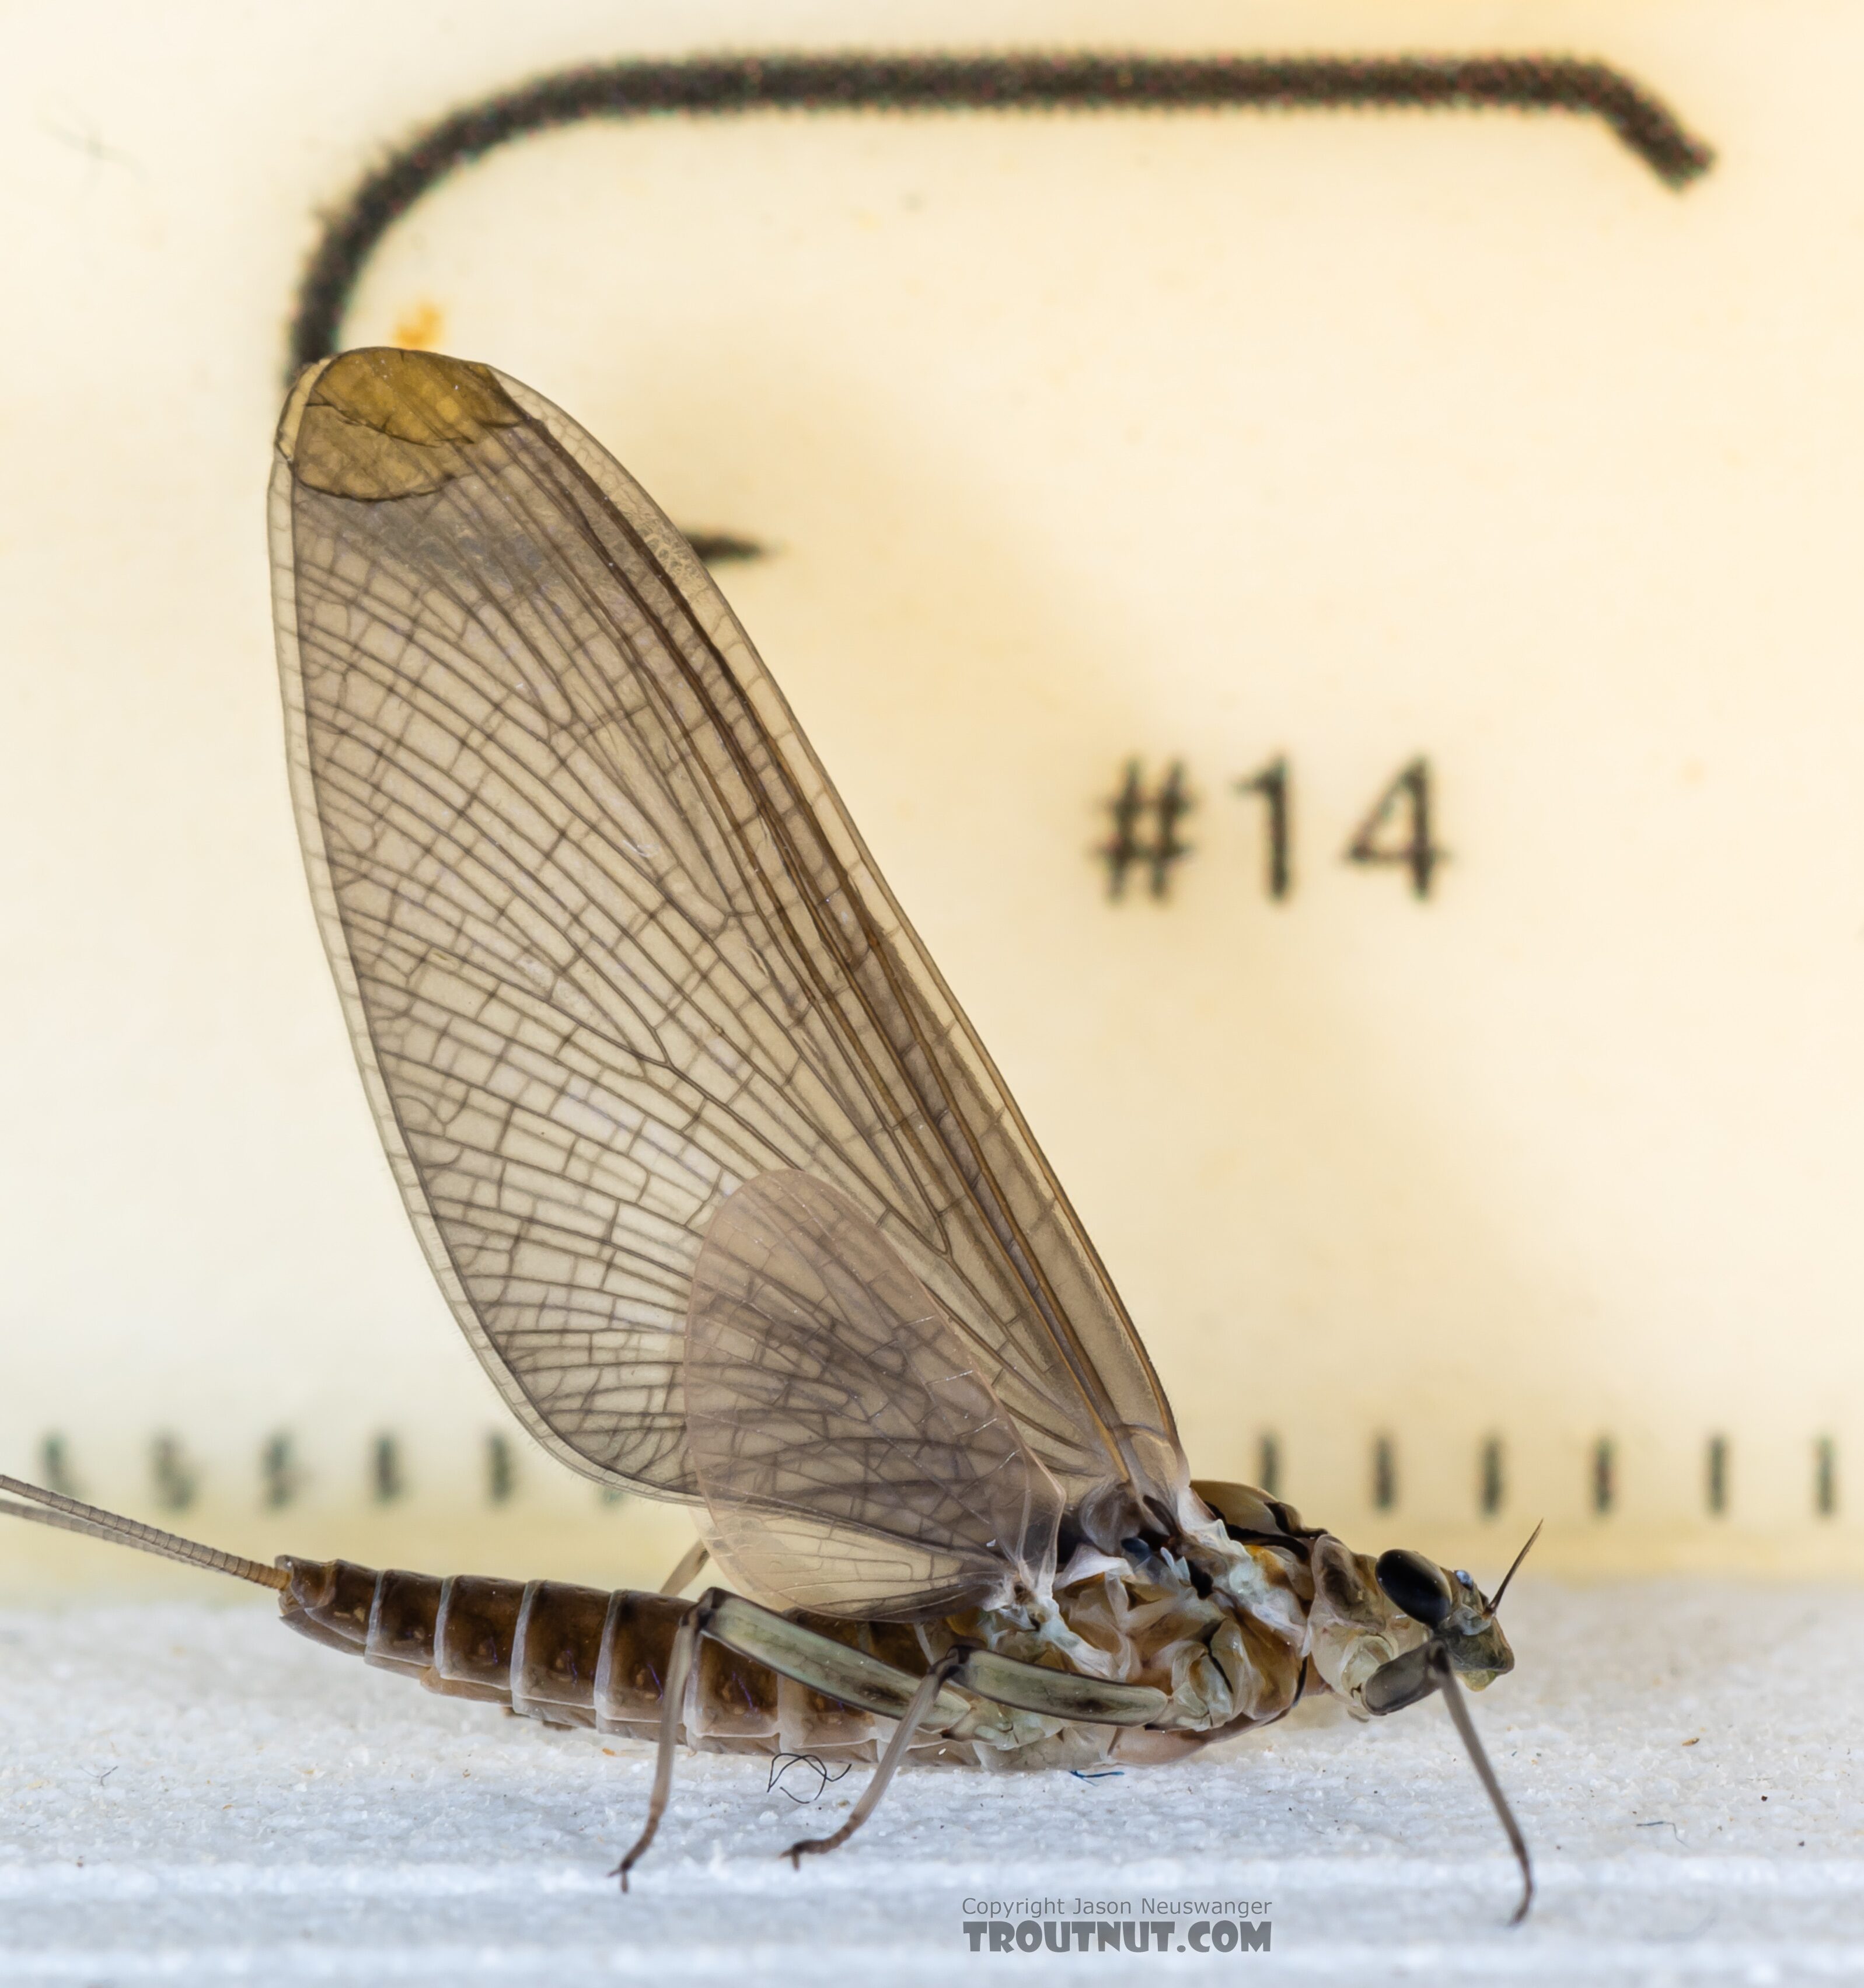 Female Rhithrogena hageni (Western Black Quill) Mayfly Dun from Mystery Creek #249 in Washington